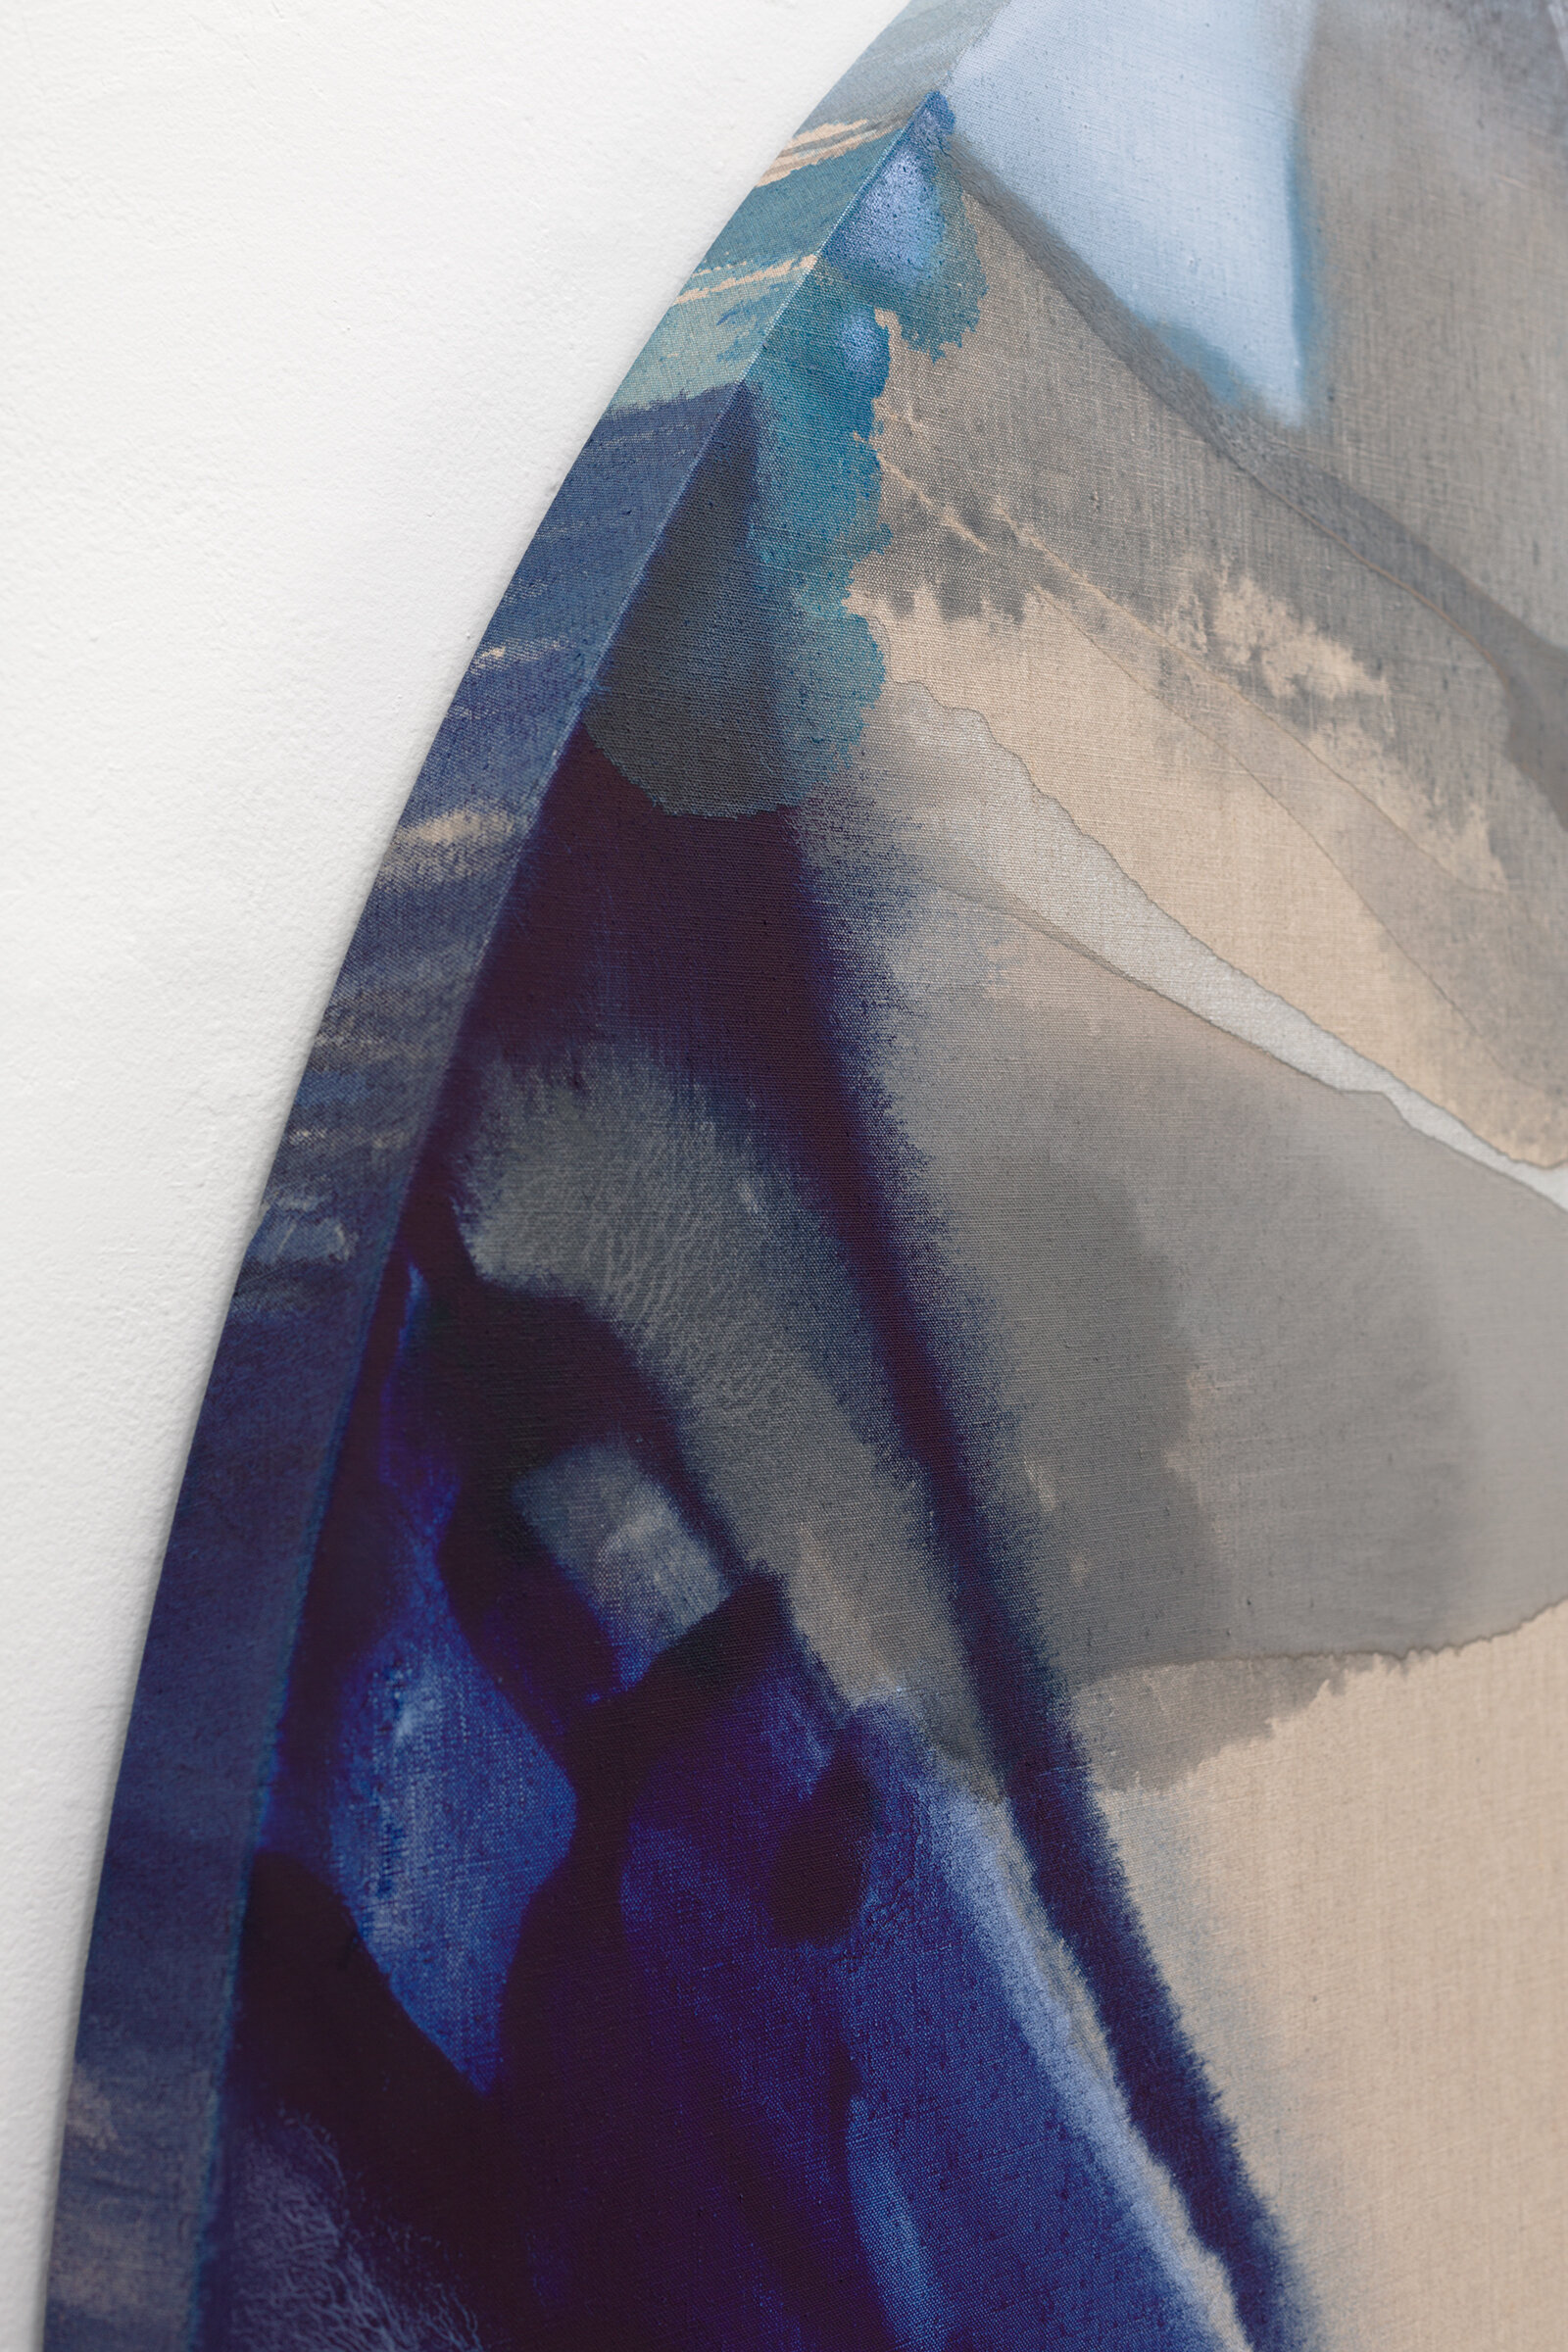  PAMELA JORDEN (detail)  Lune , 2019 oil and acrylic on linen, 72” x 66” 